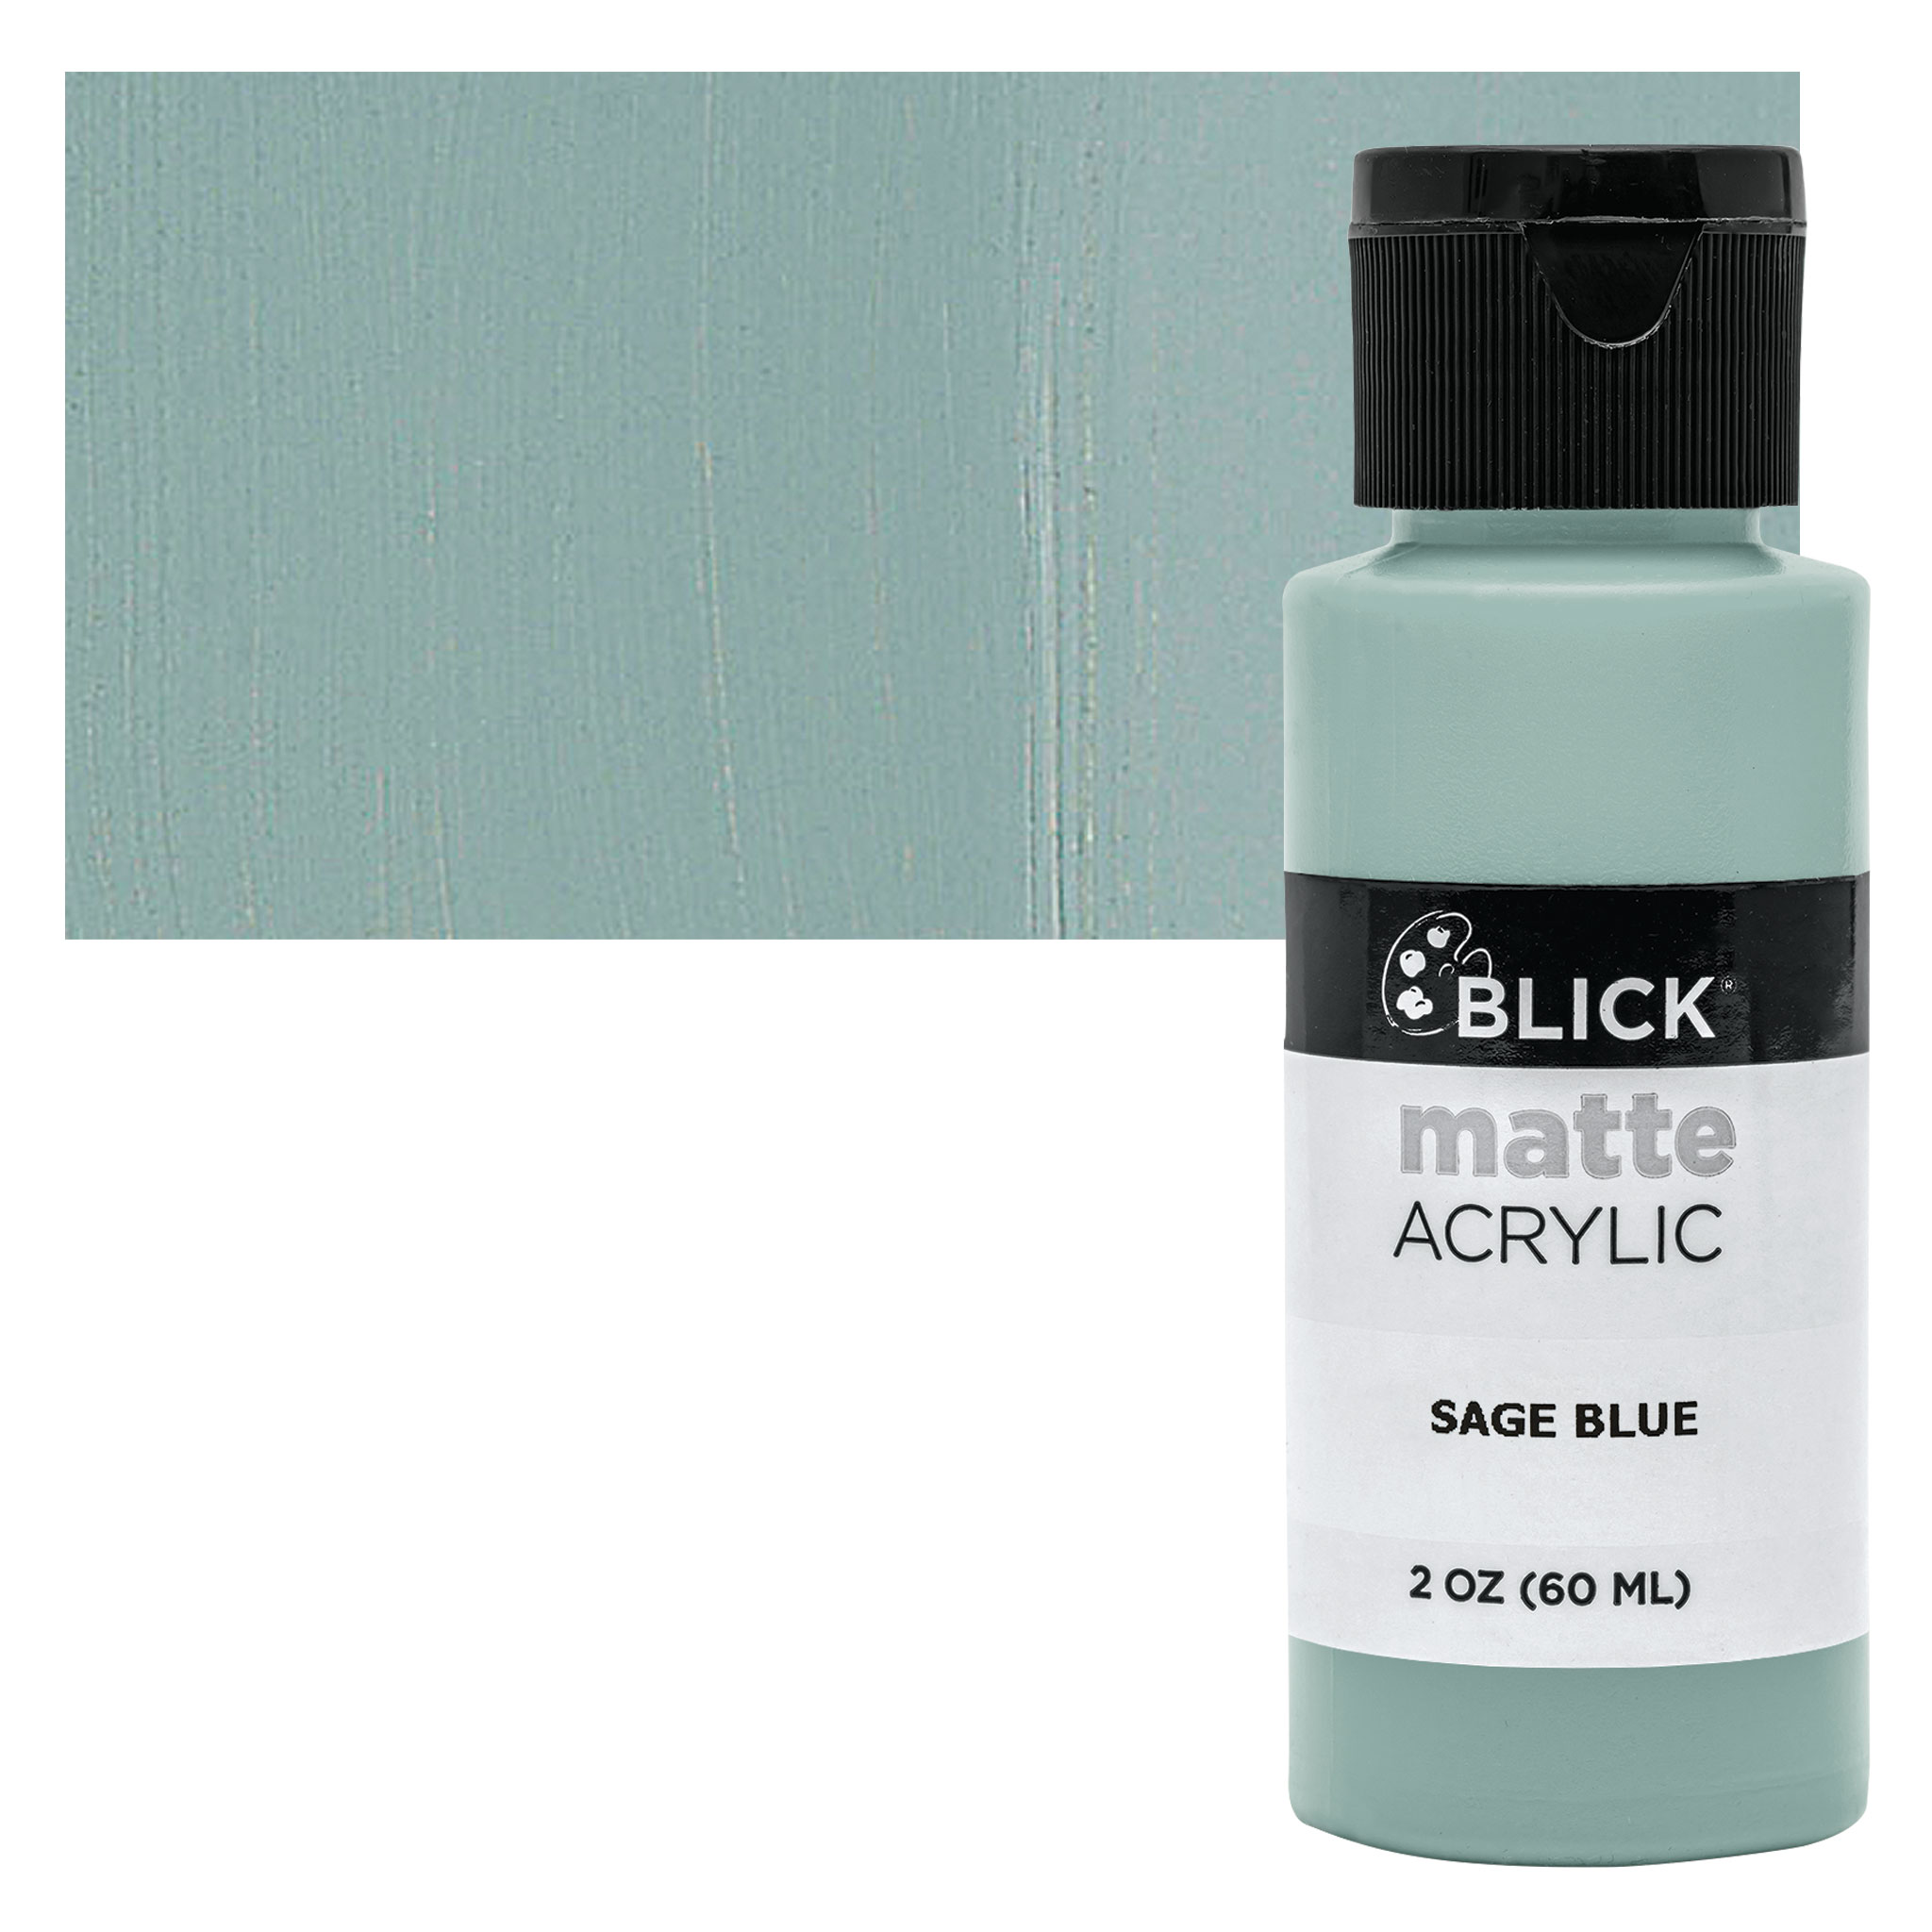 Blick Matte Acrylic - Sage Blue, 2 oz bottle